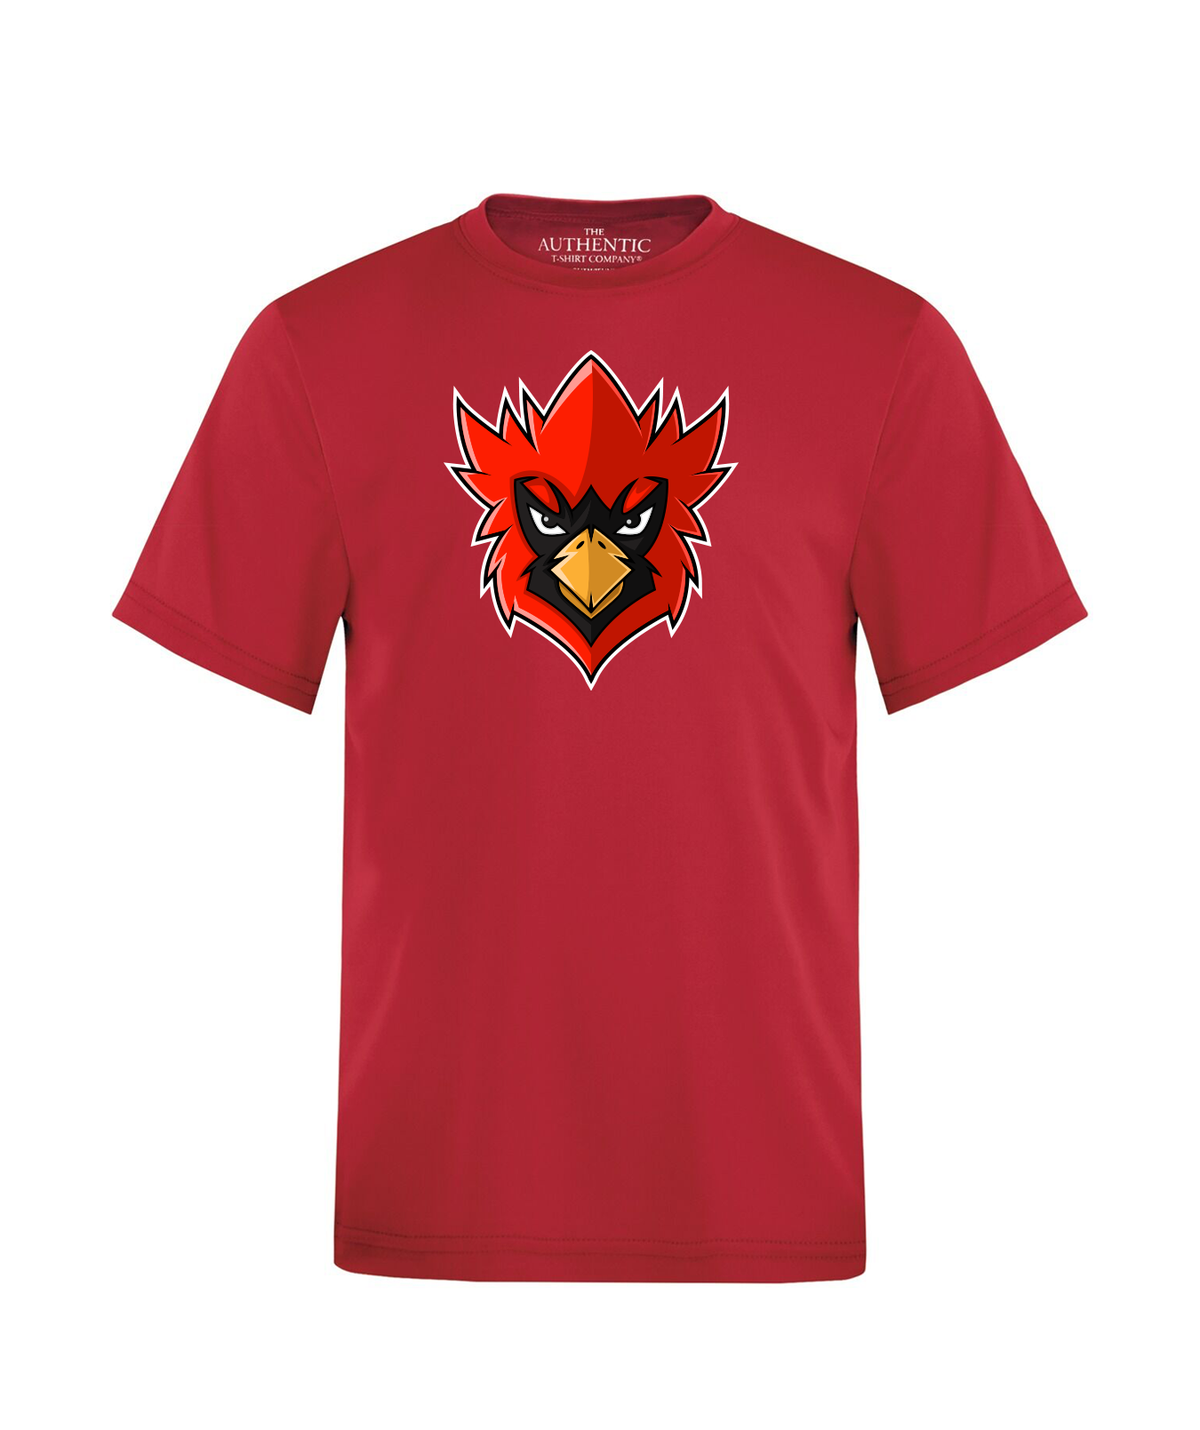 Innisfil Cardinals "Big Head" T-Shirt - Red